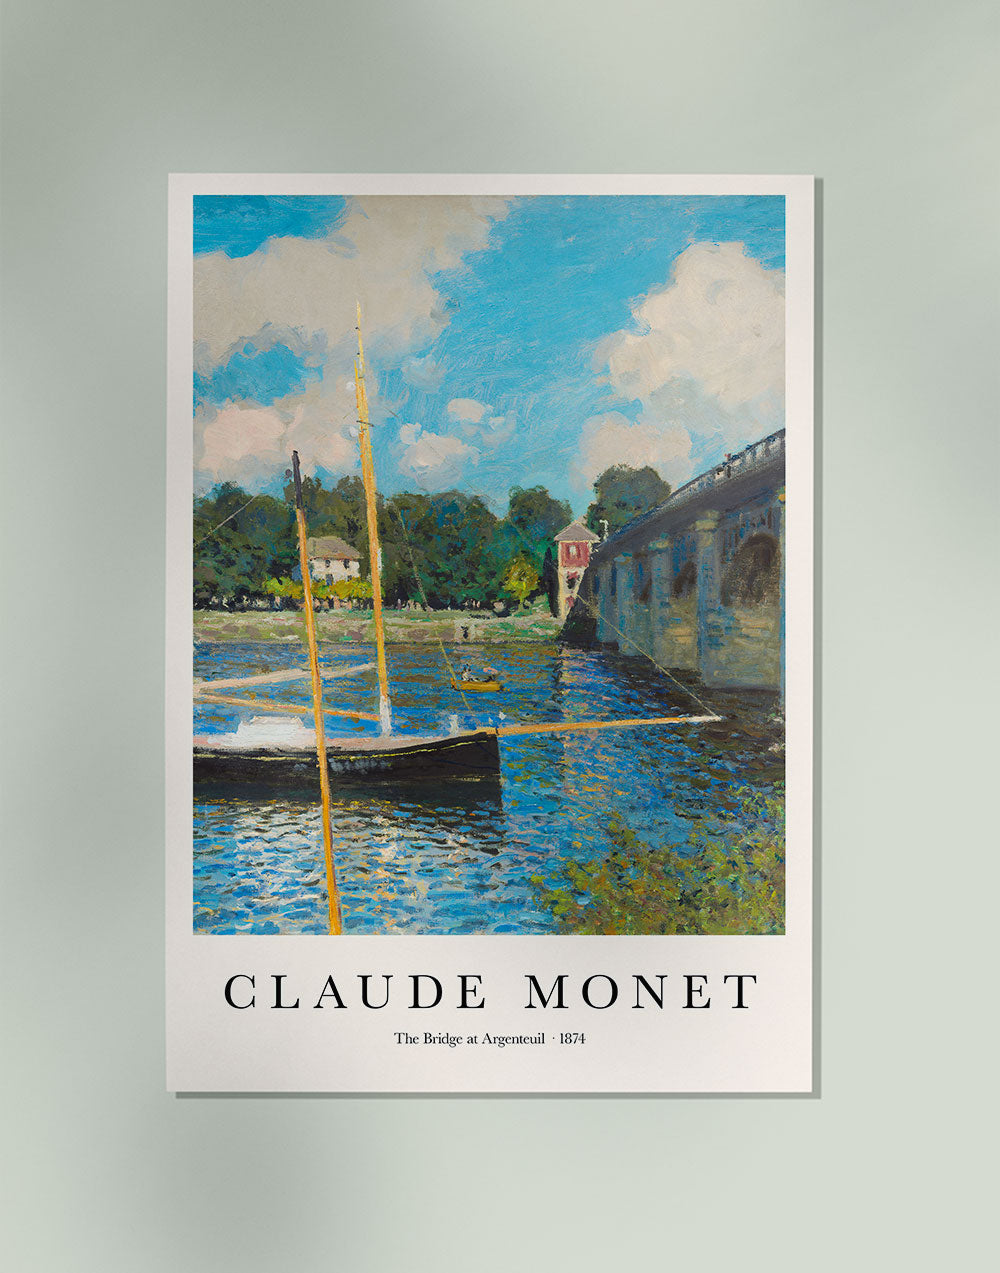 The Bridge at Argenteuil by Claude Monet Art Exhibition Poster